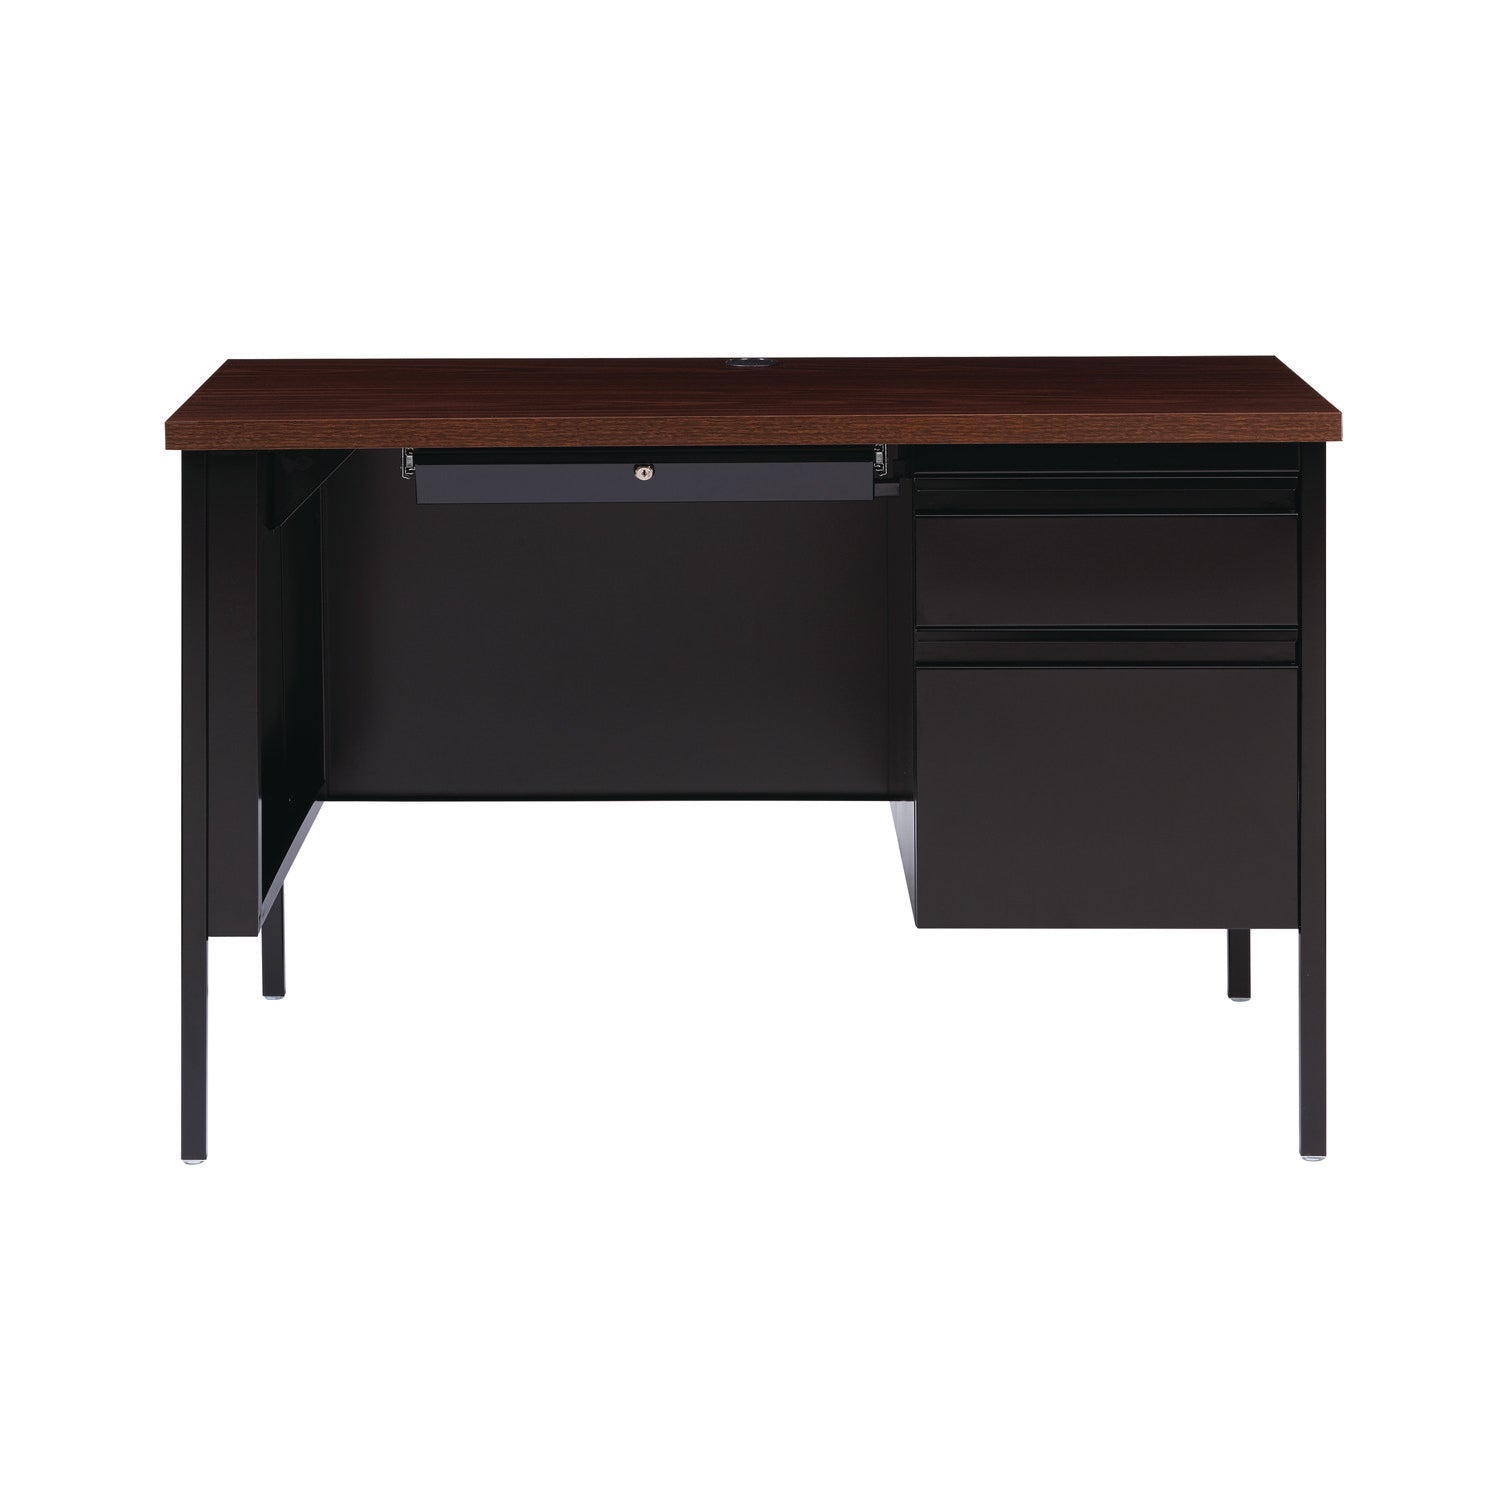 single-pedestal-steel-desk-455-x-24-x-295-mocha-black-black-legs_alehsd4524bm - 1